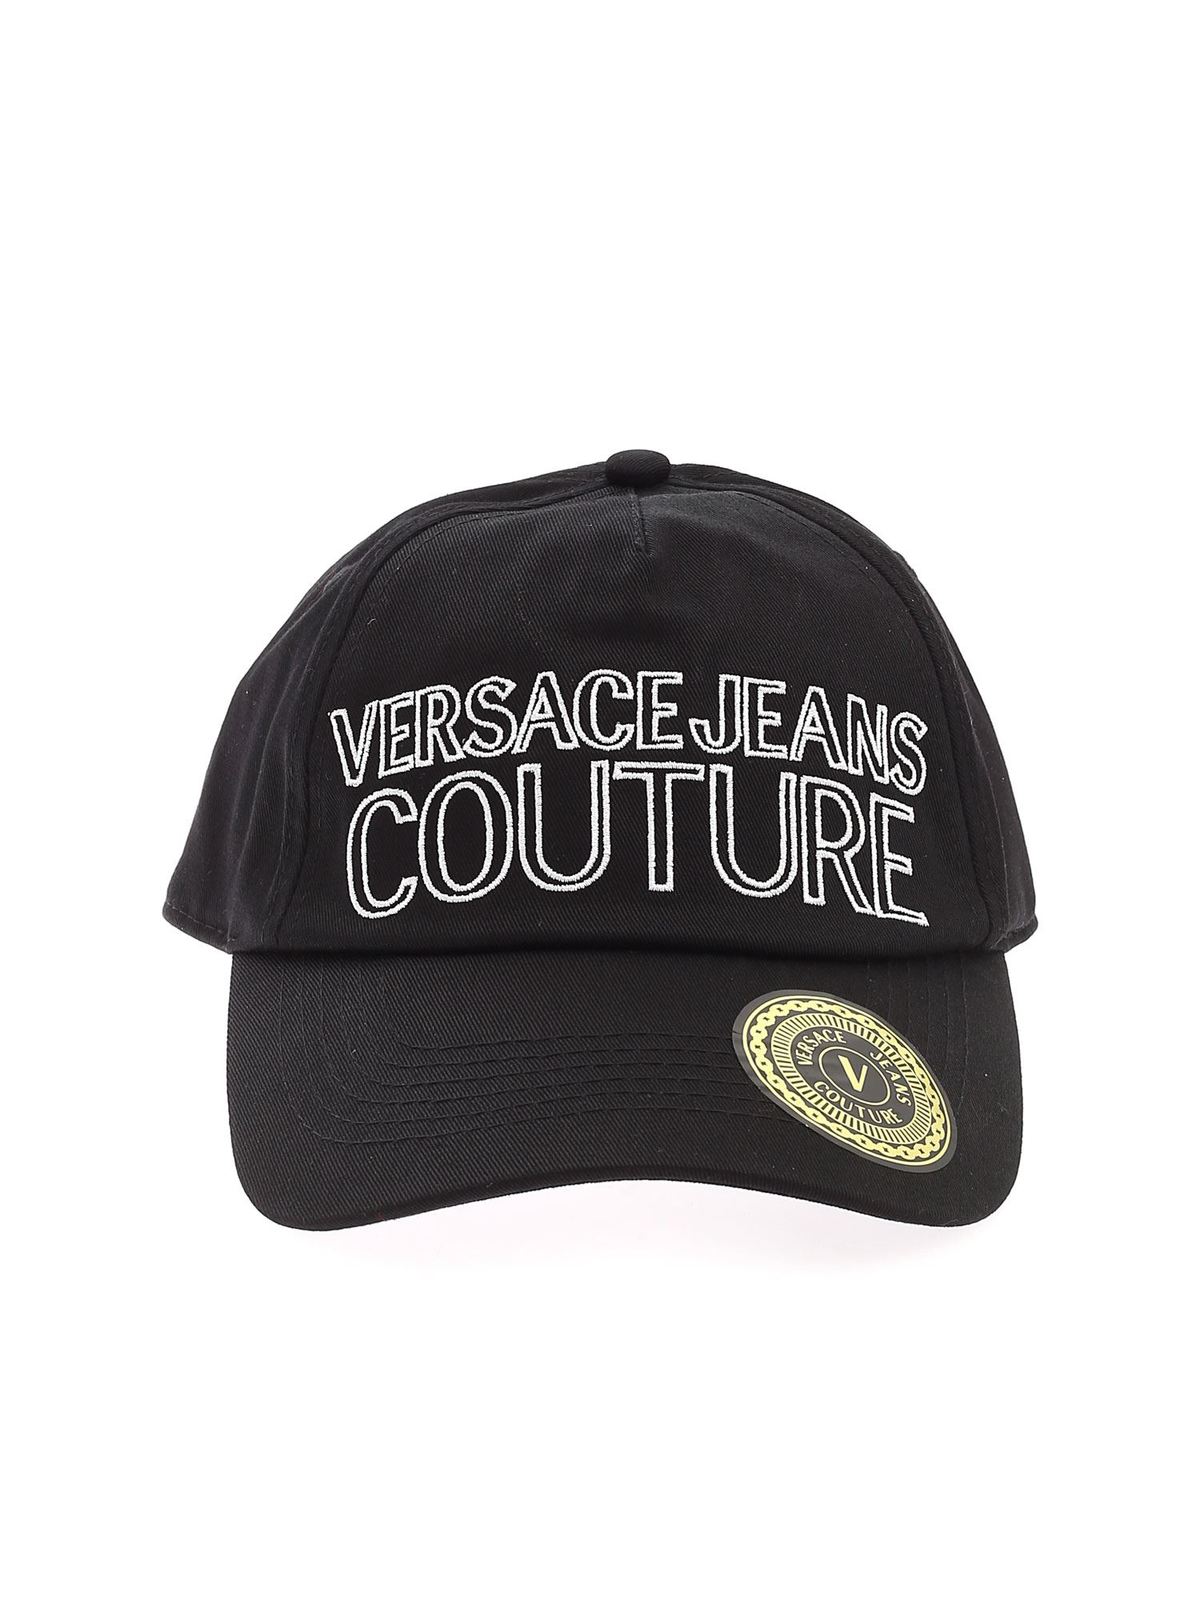 paridad cuatro veces exposición Sombreros Versace Jeans Couture - Sombrero - Negro - E8YWAK1185075MI9